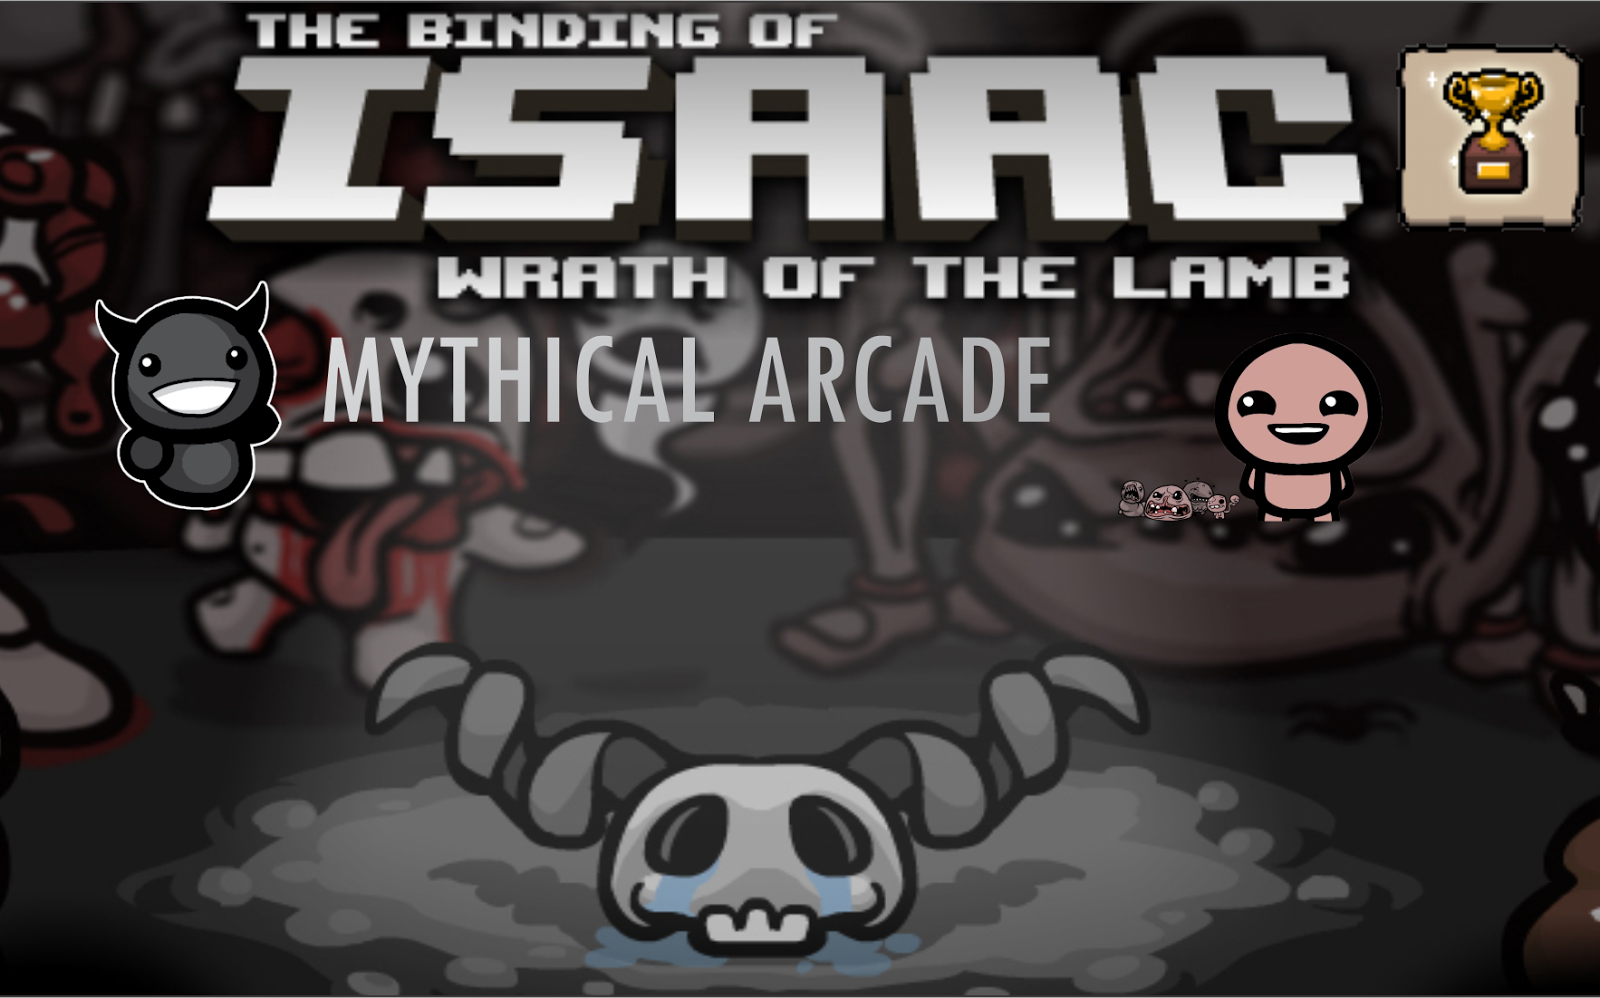  Mythical arcade